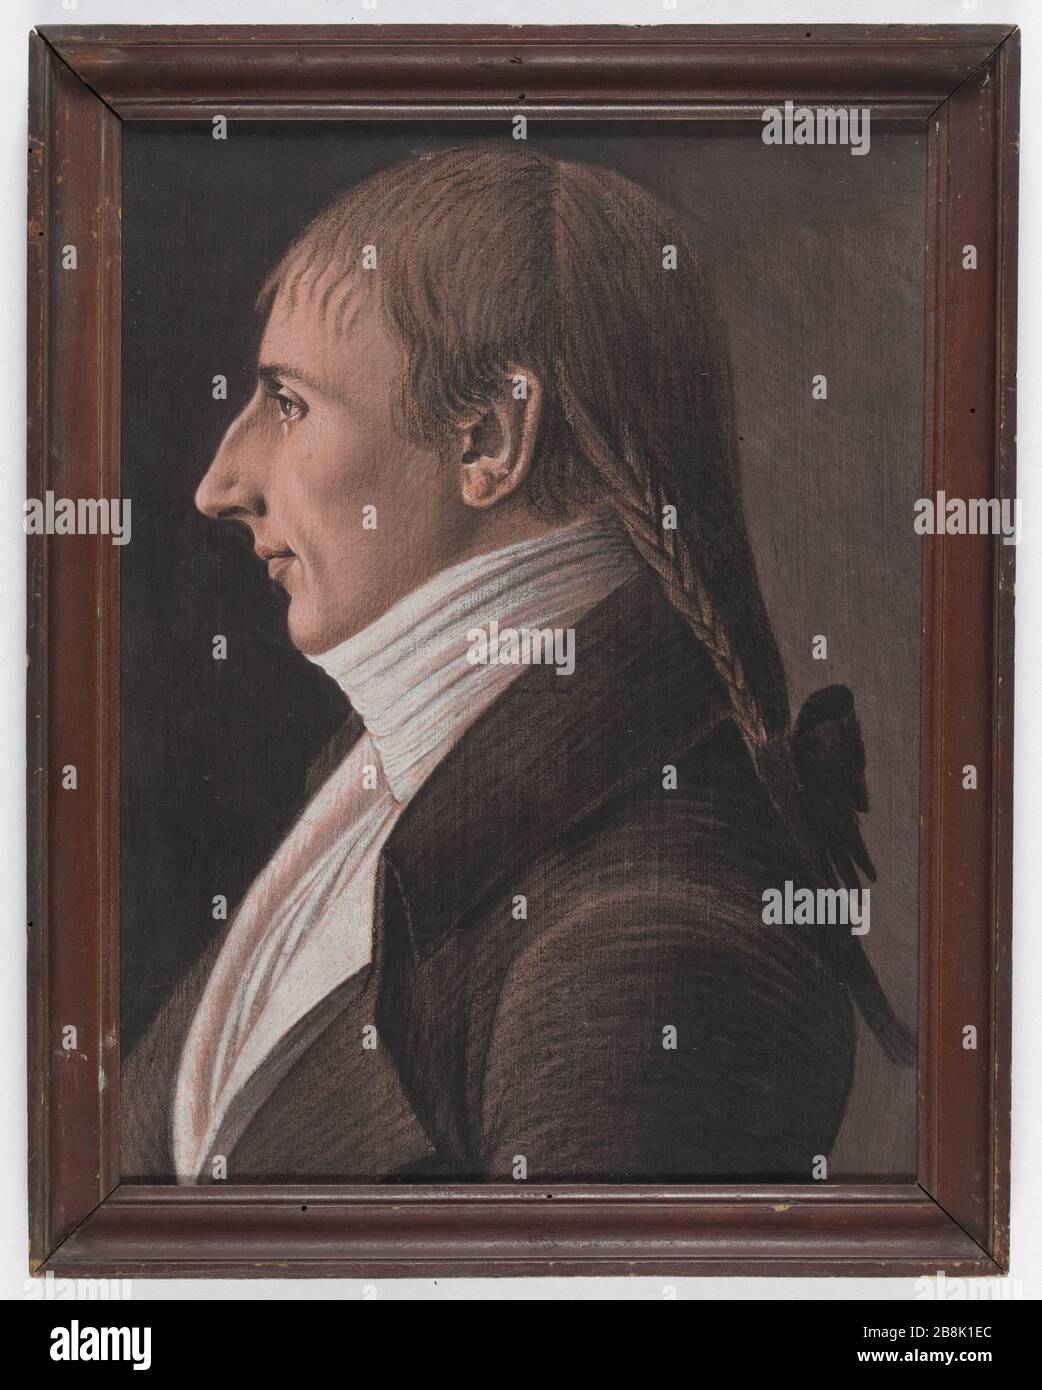 MAN PROFILE 'Homme de profil'. Pastel. Paris, musée Carnavalet. Stock Photo